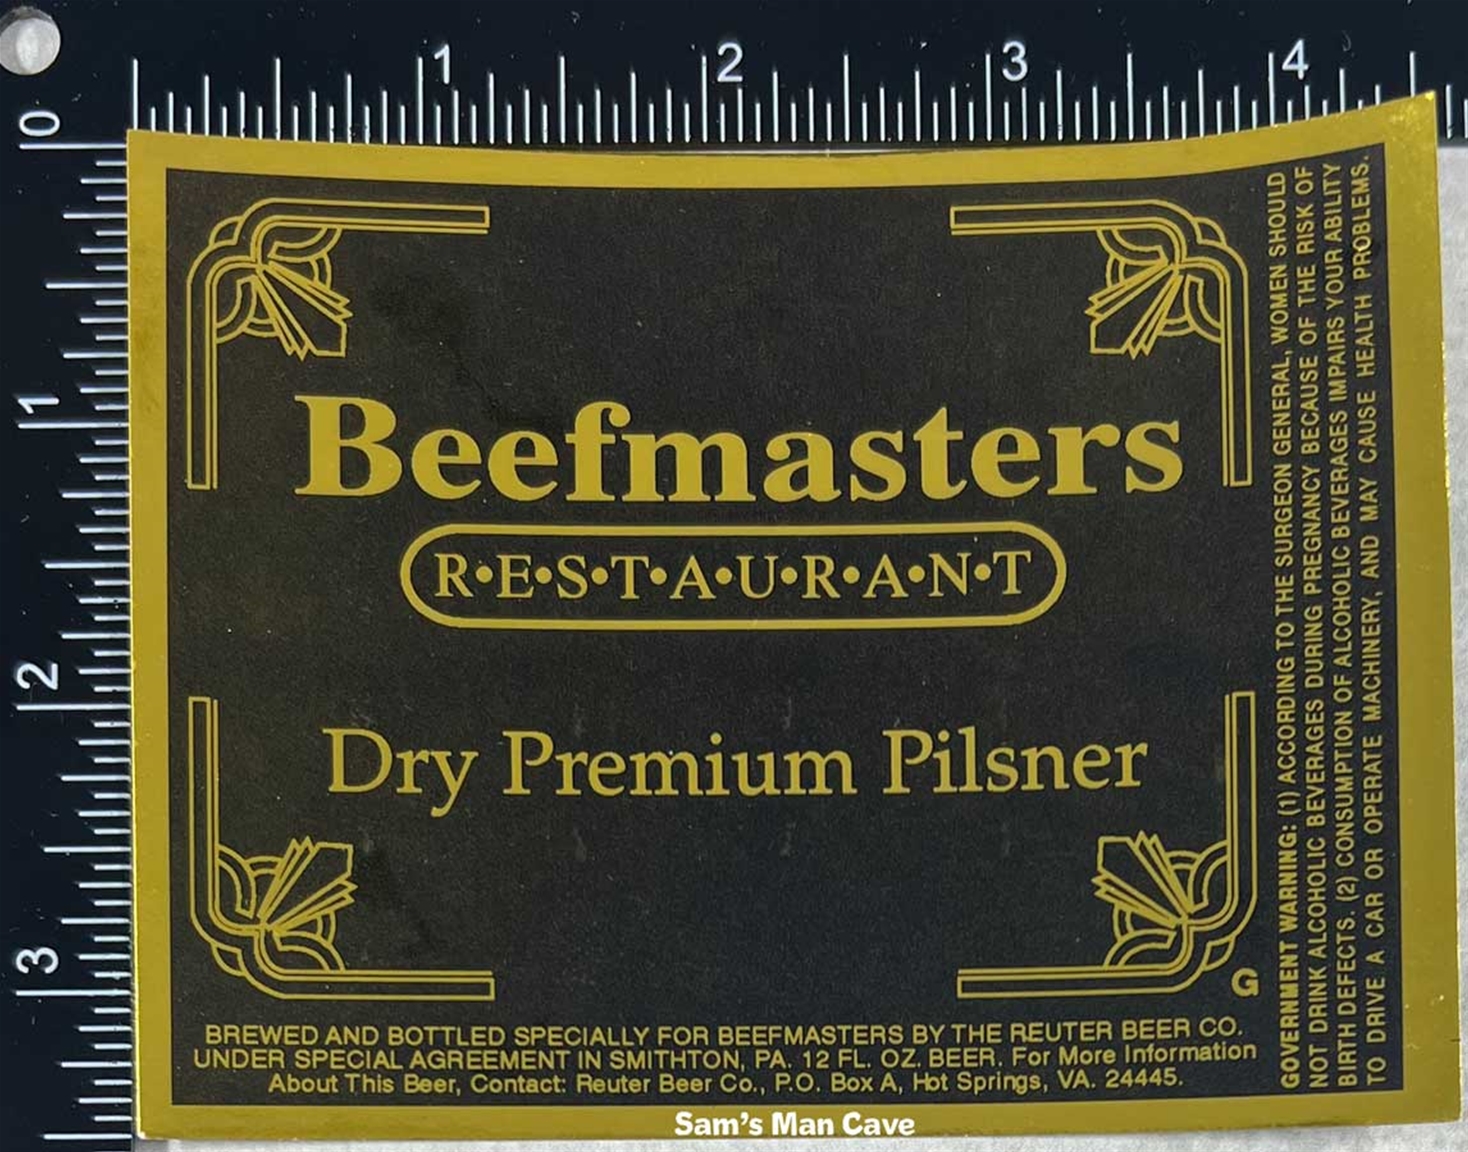 Beefmasters Restaurant Dry Premium Pilsner Label